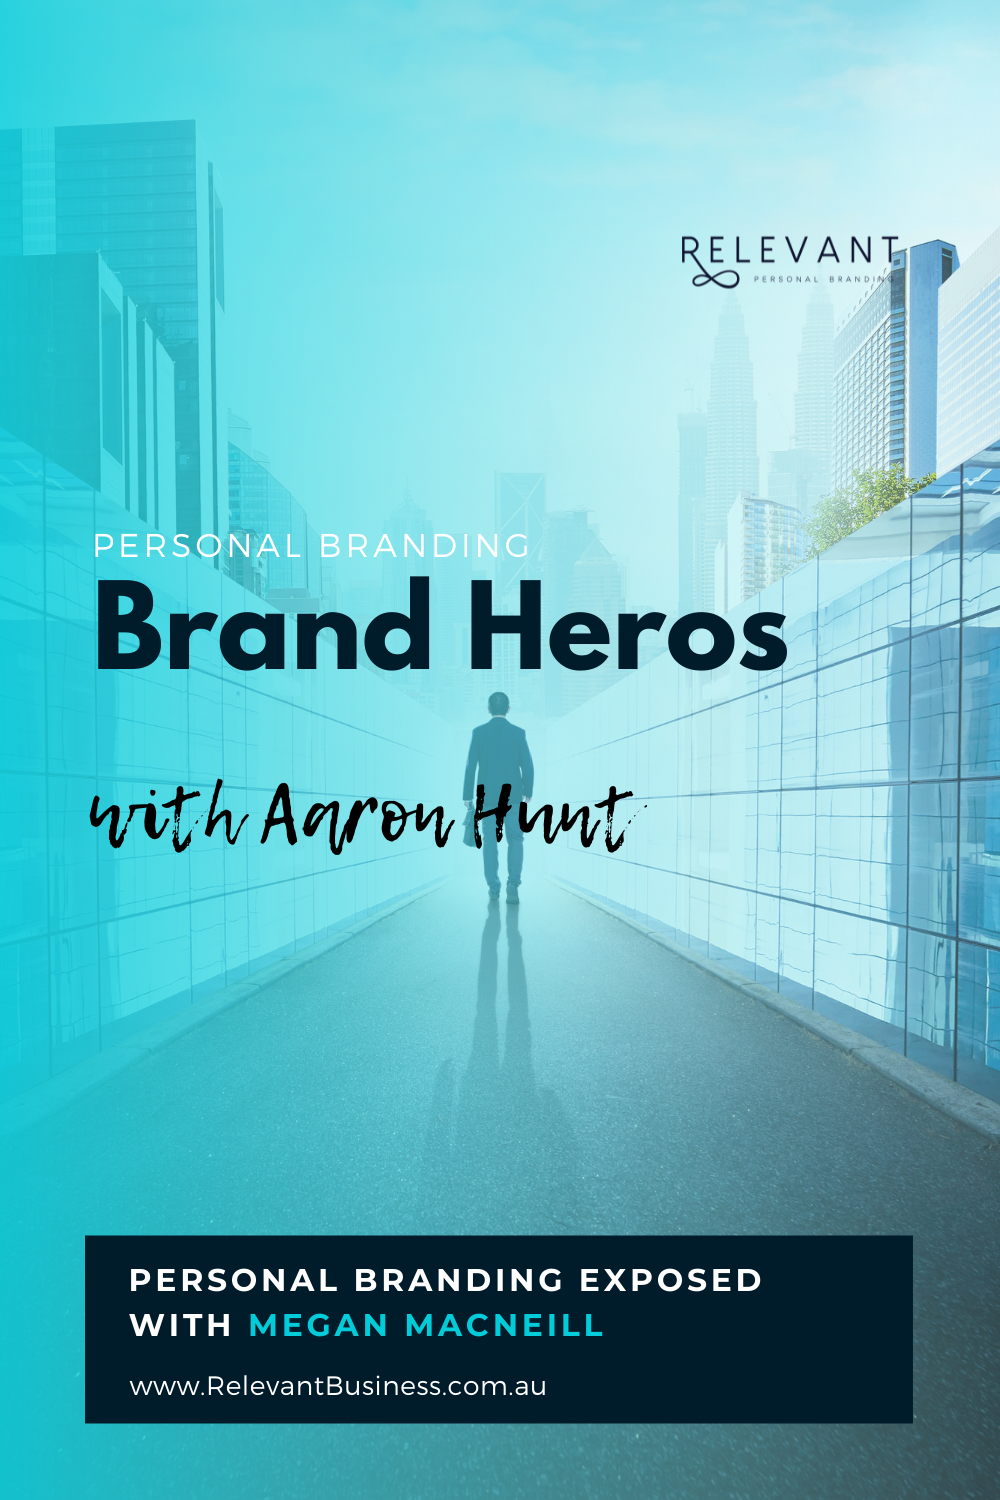 Brand Heros with Aaron Hunt